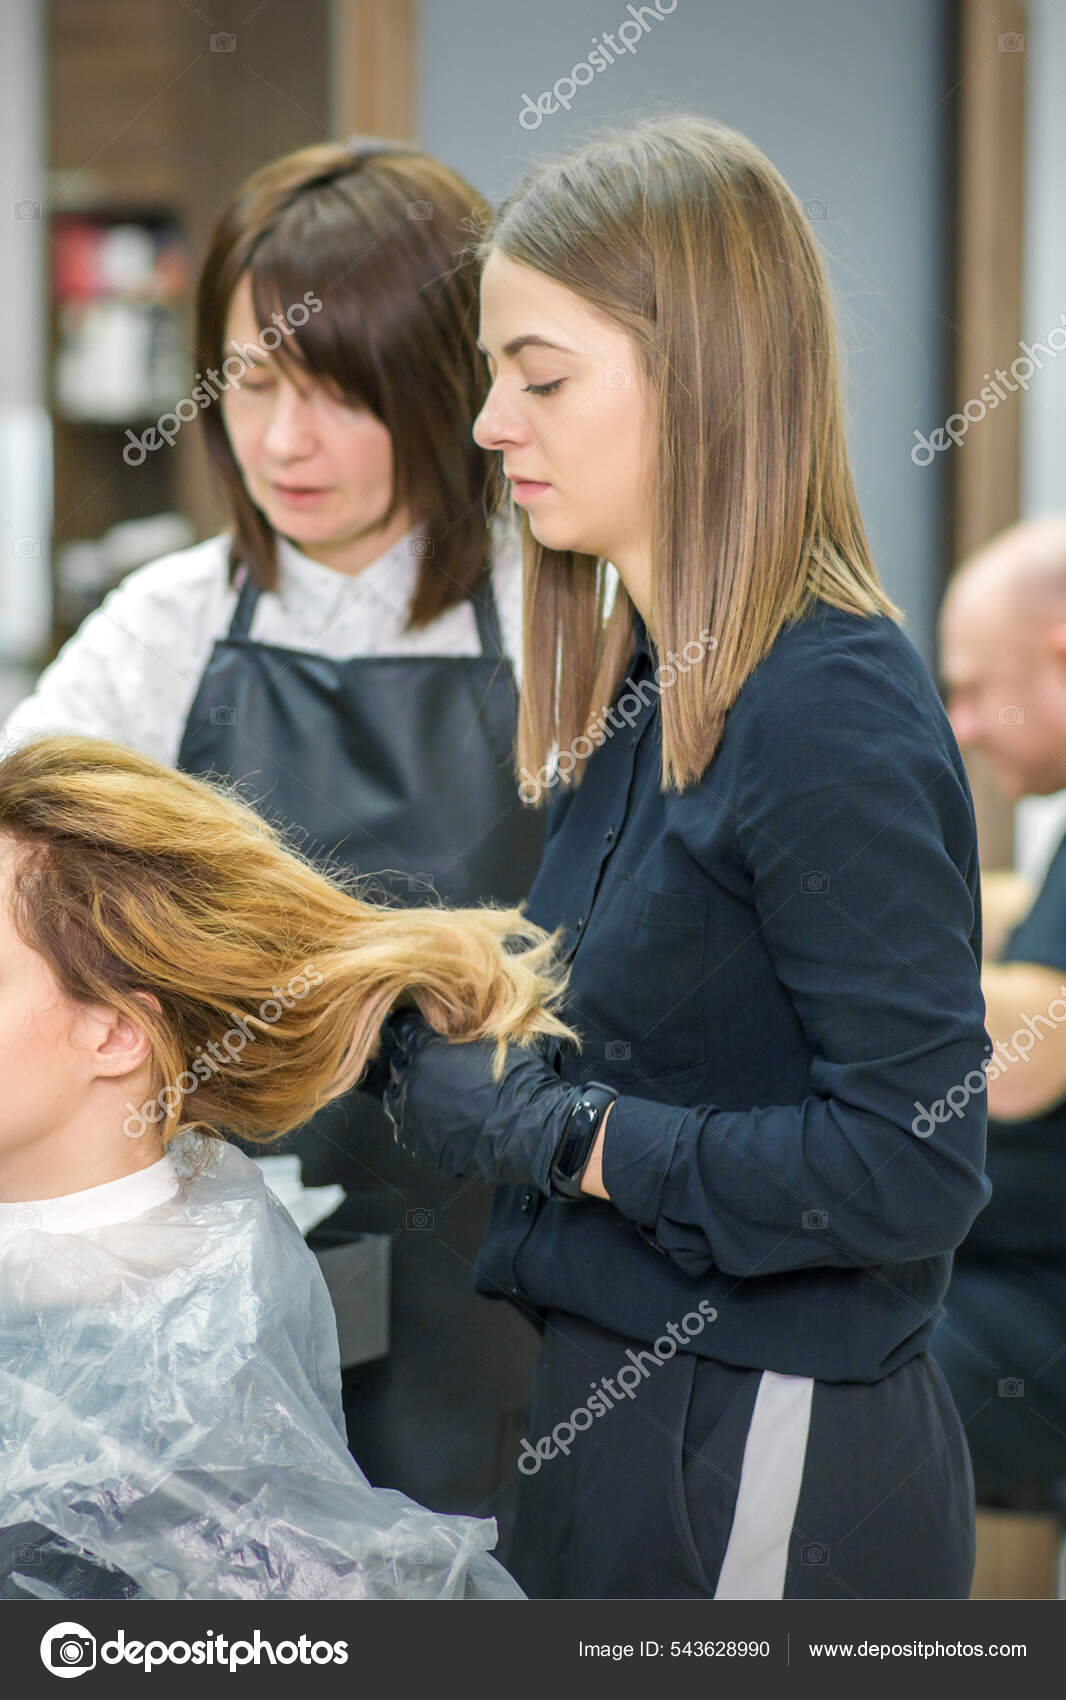 Cabeleireiro seca o cabelo com secador de cabelo para uma mulher